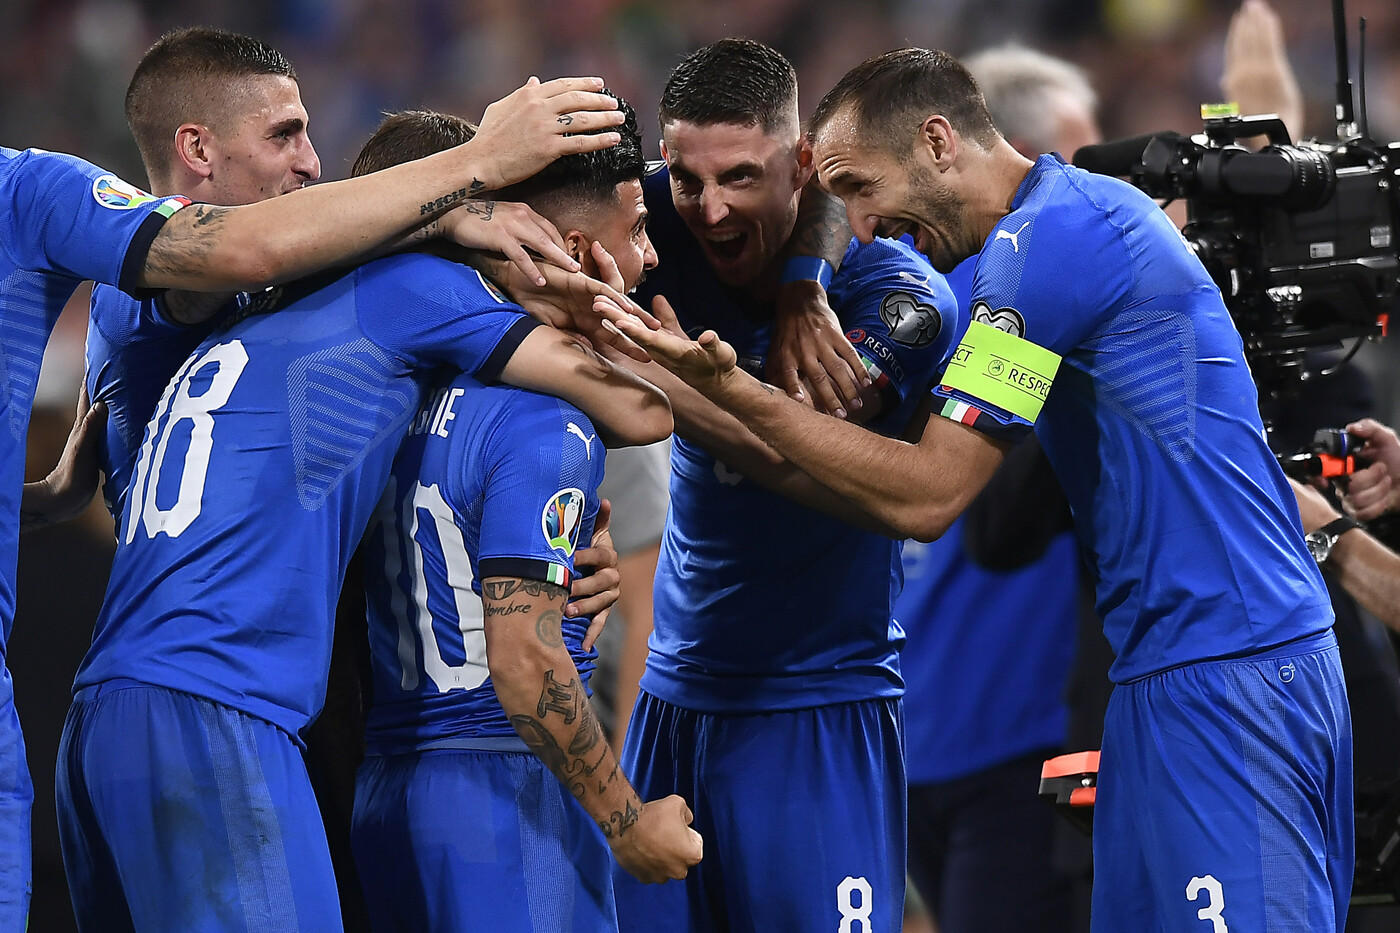 Italia ngược dòng, kéo dài chuỗi bất bại và những điểm nhấn từ trận thắng Bosnia